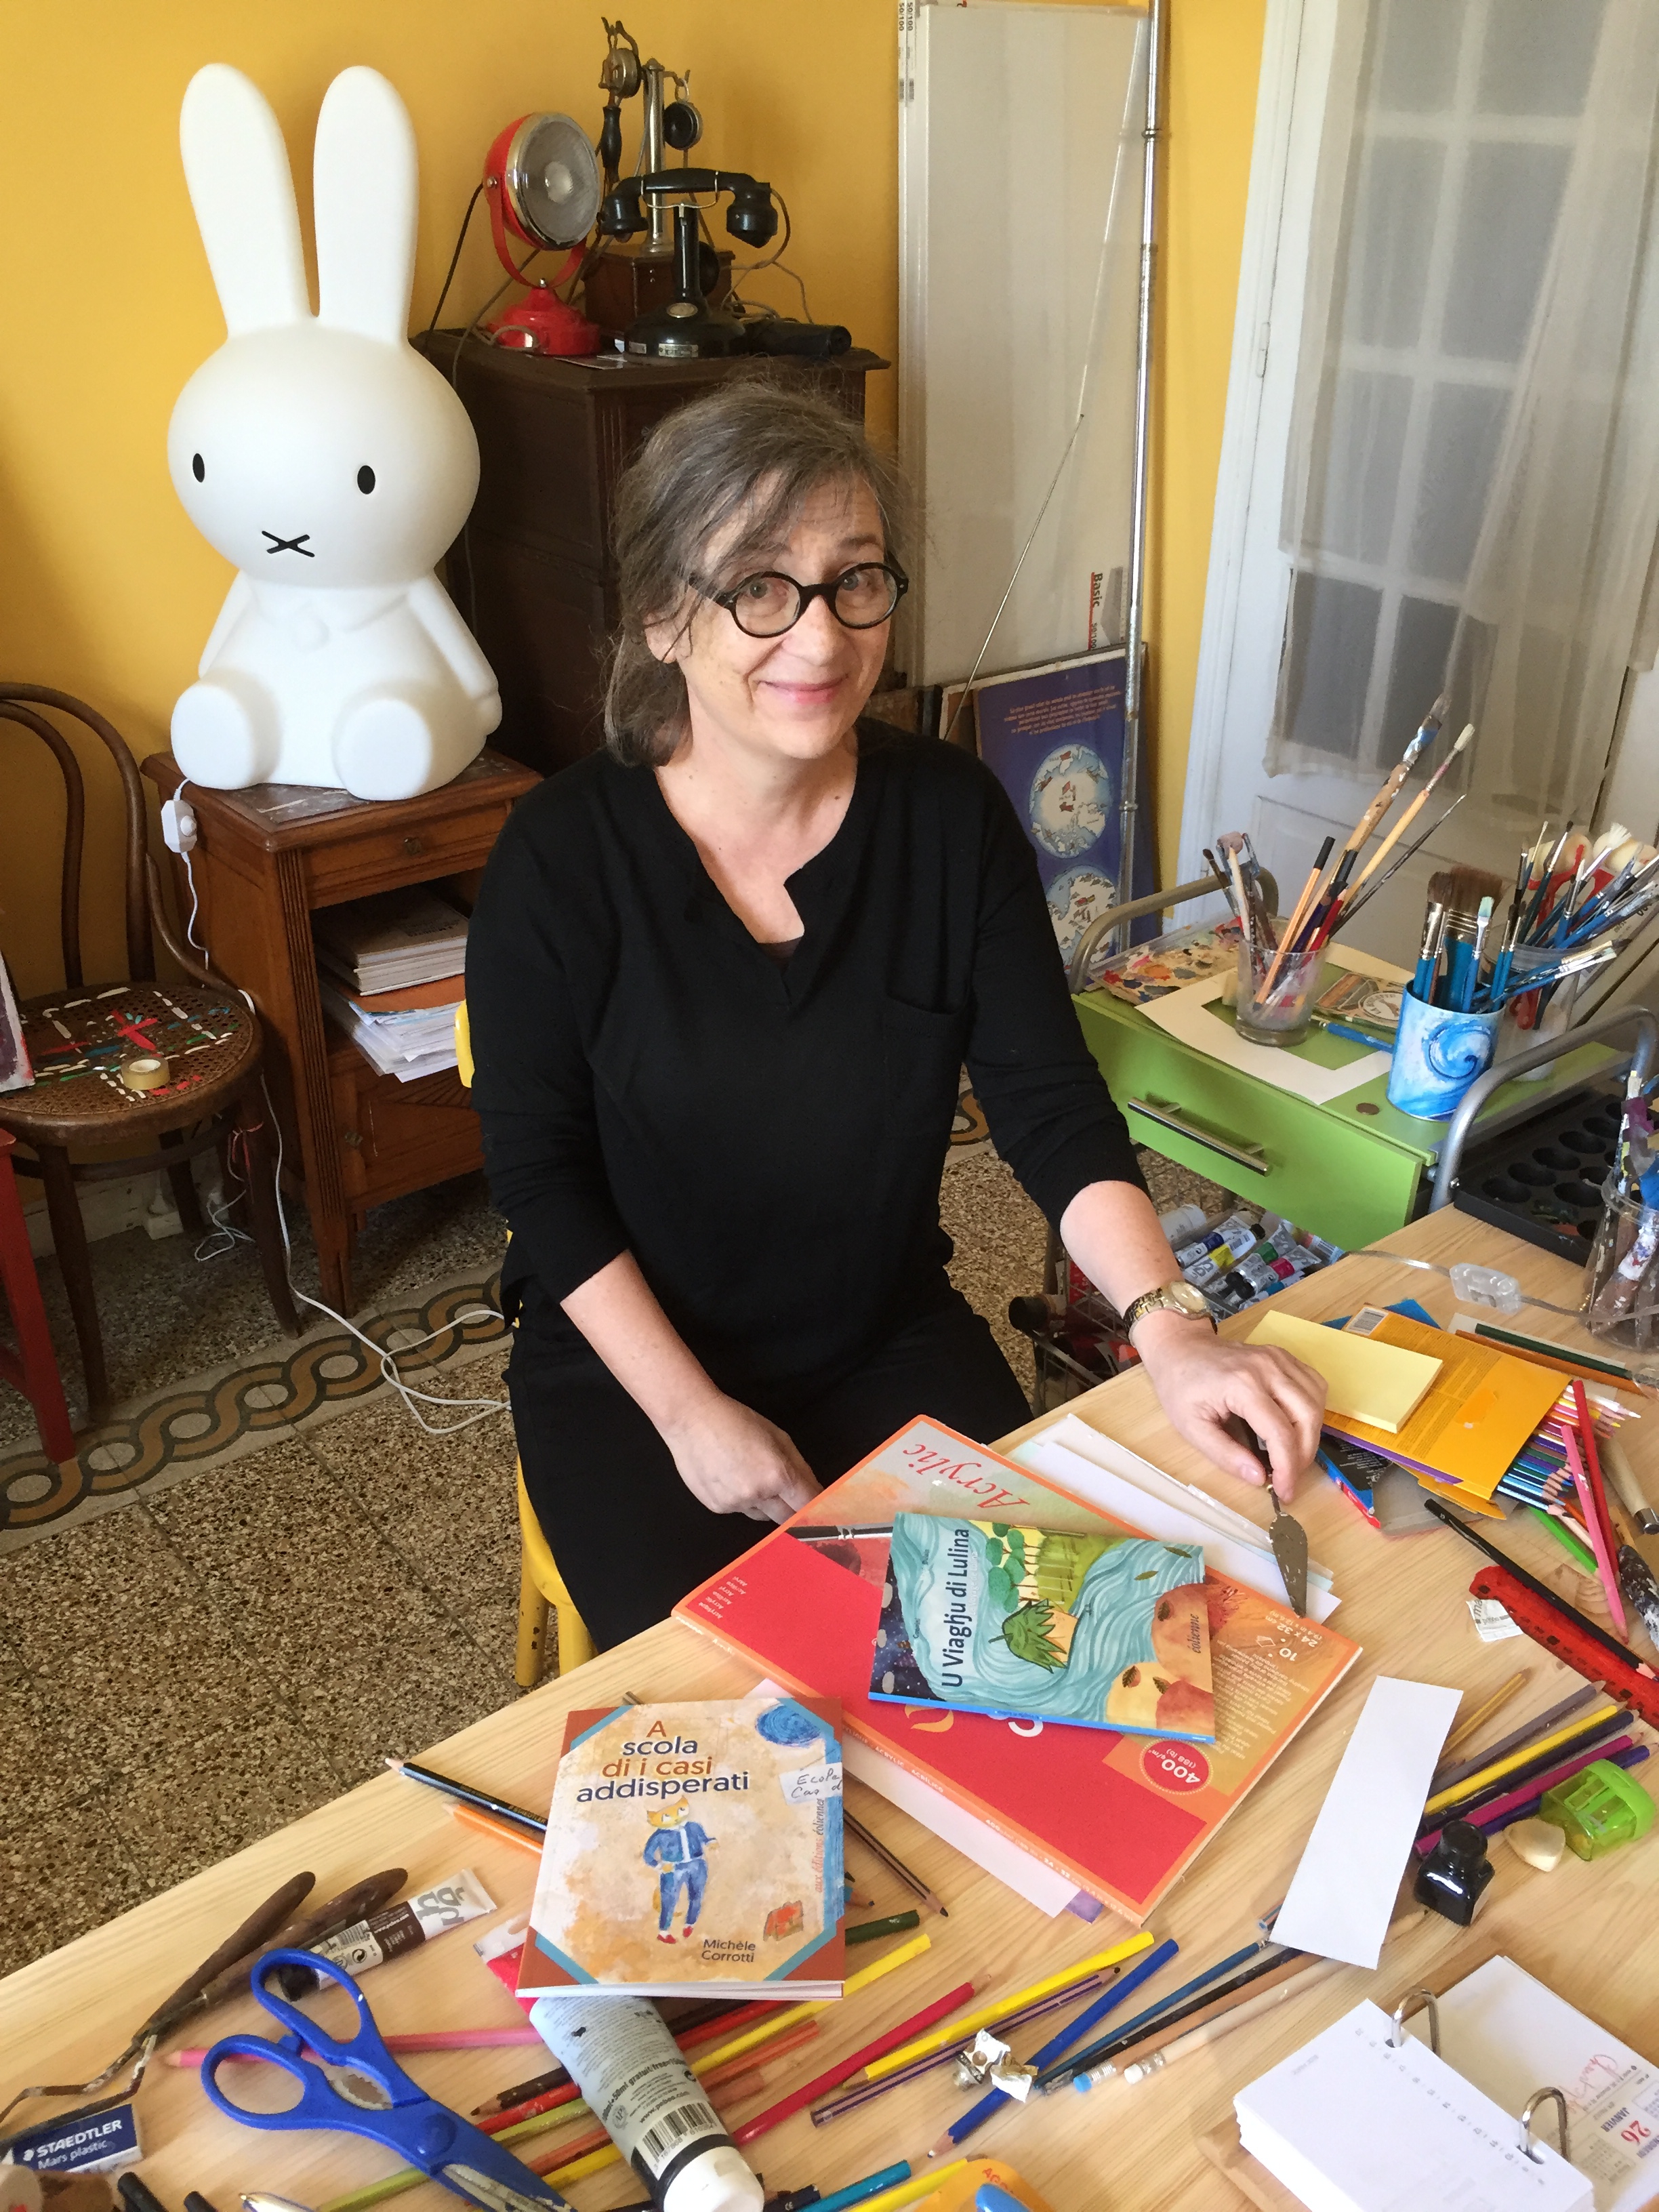 Littérature : Un bien joli livre, bilingue, pour les enfants signé Michèle Corrotti